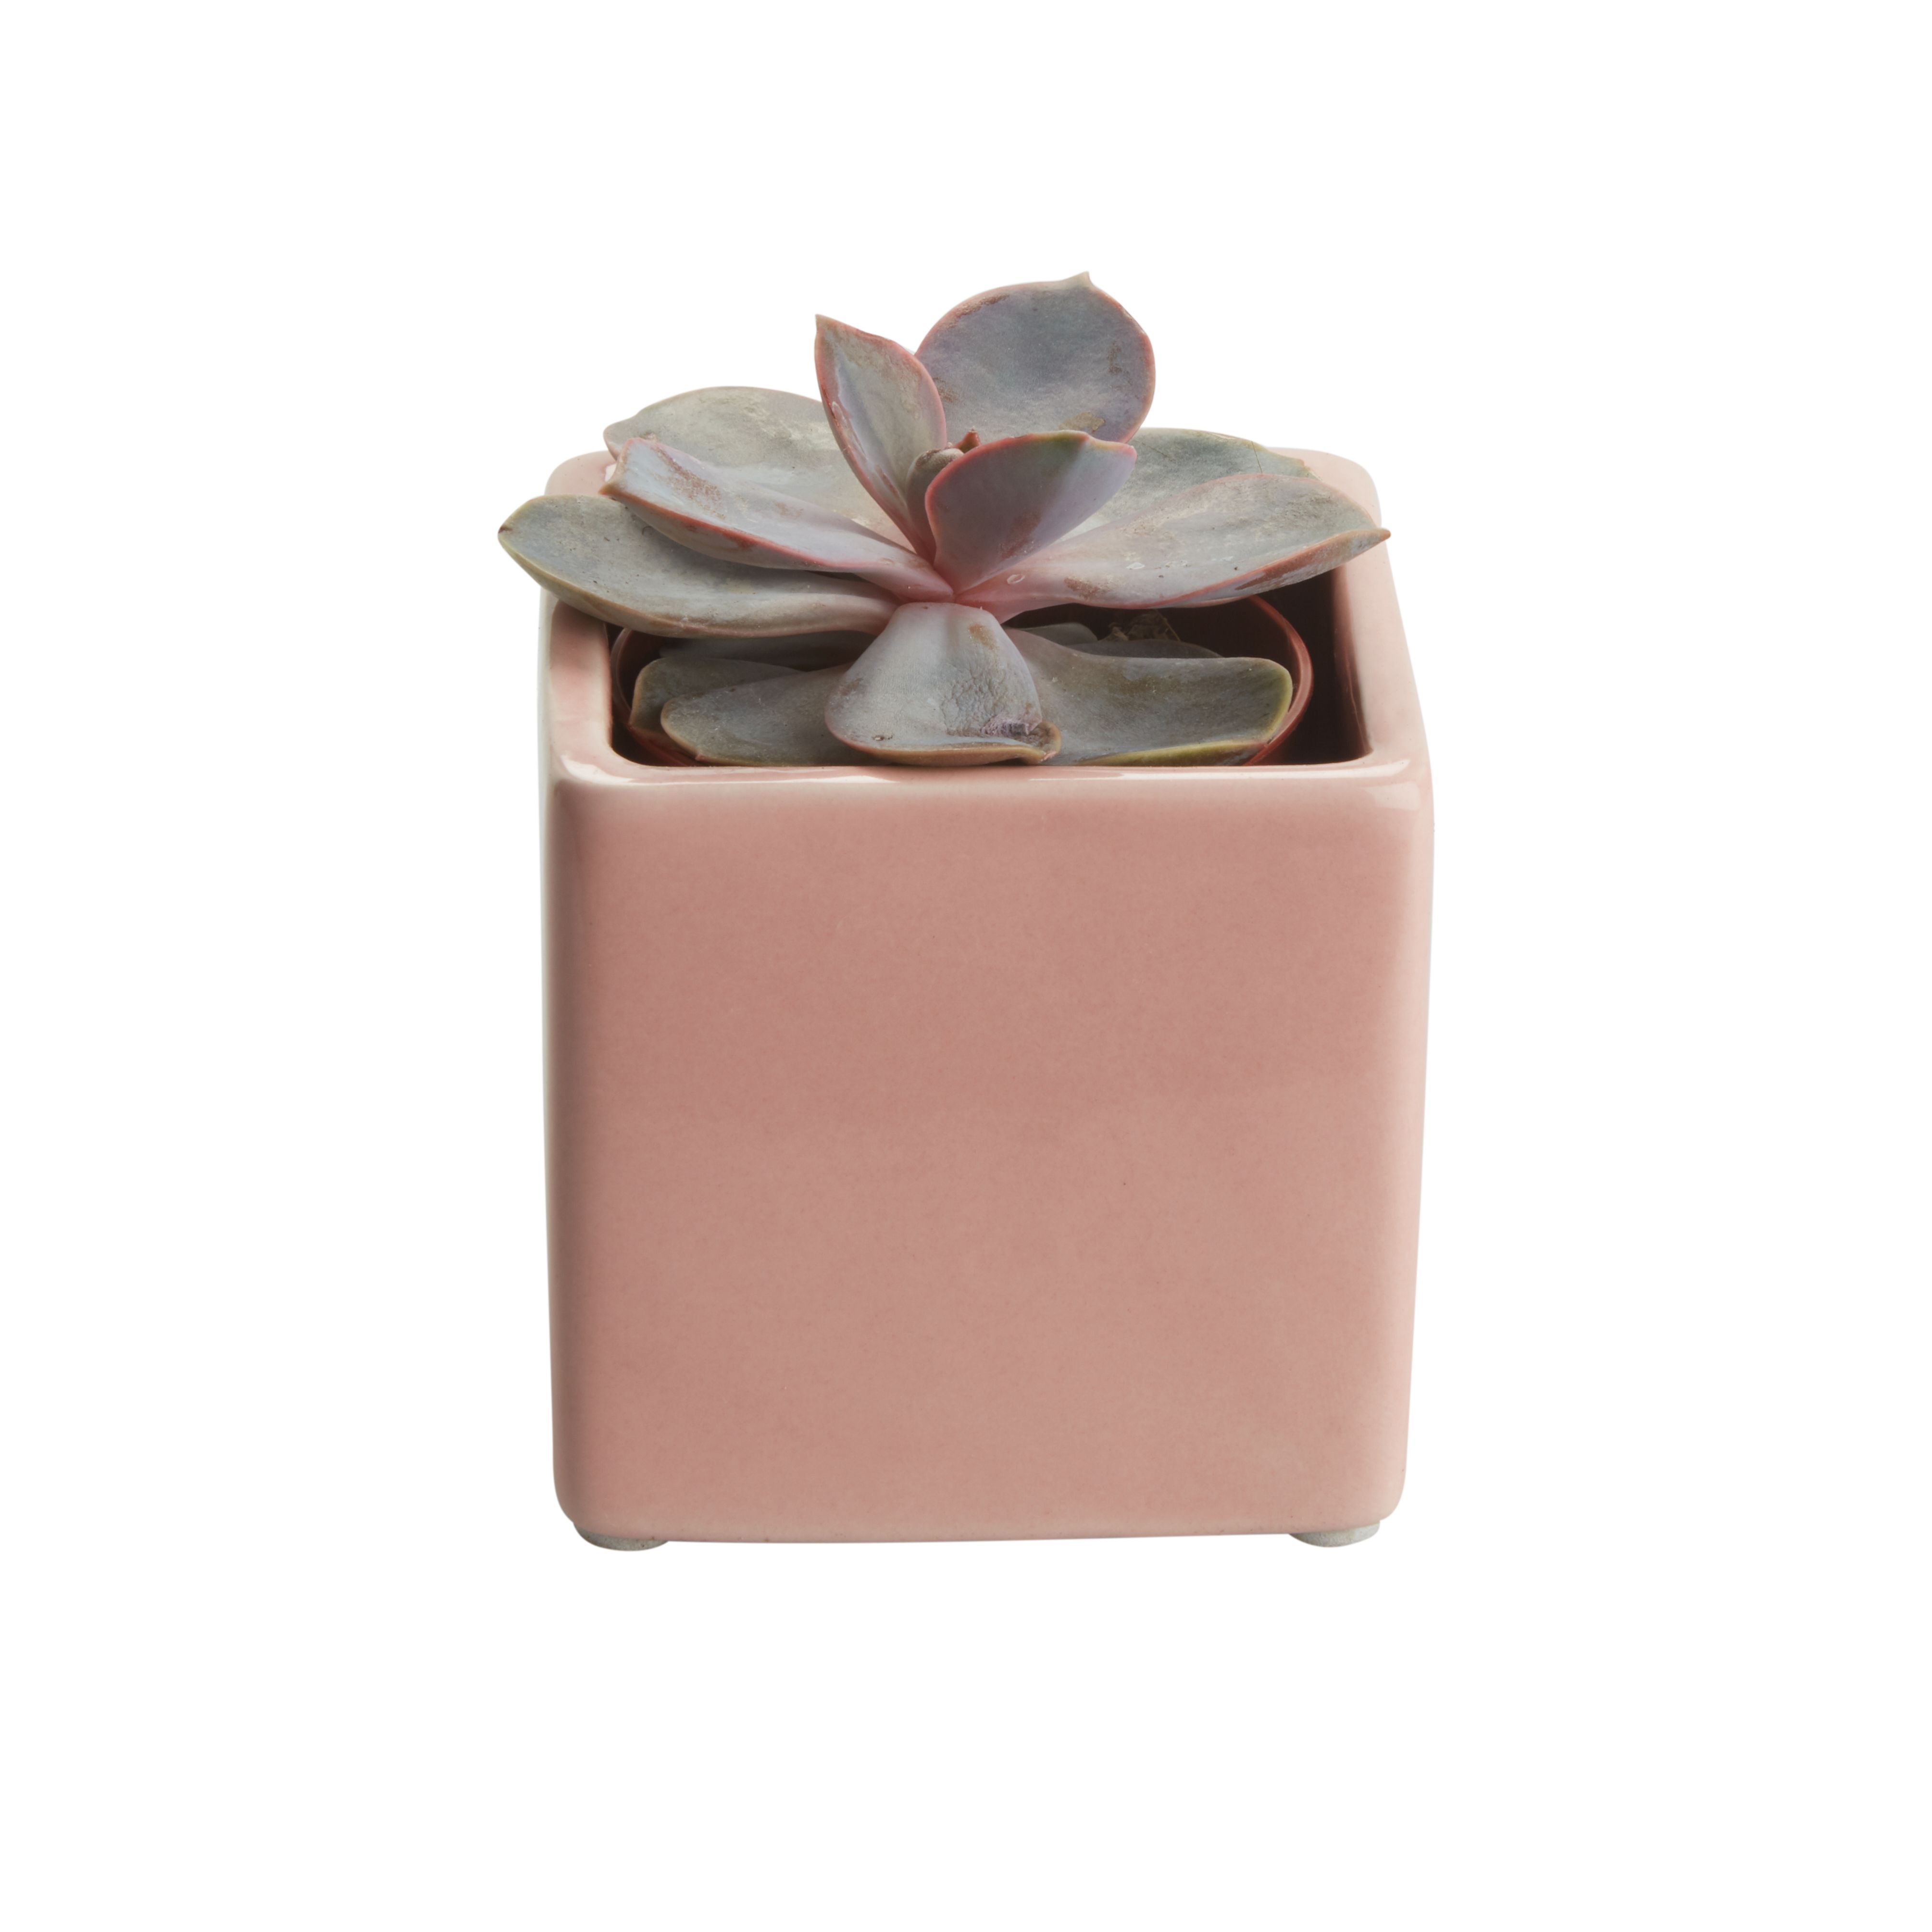 Assorted in 5.5cm Assorted Square Ceramic Decorative pot